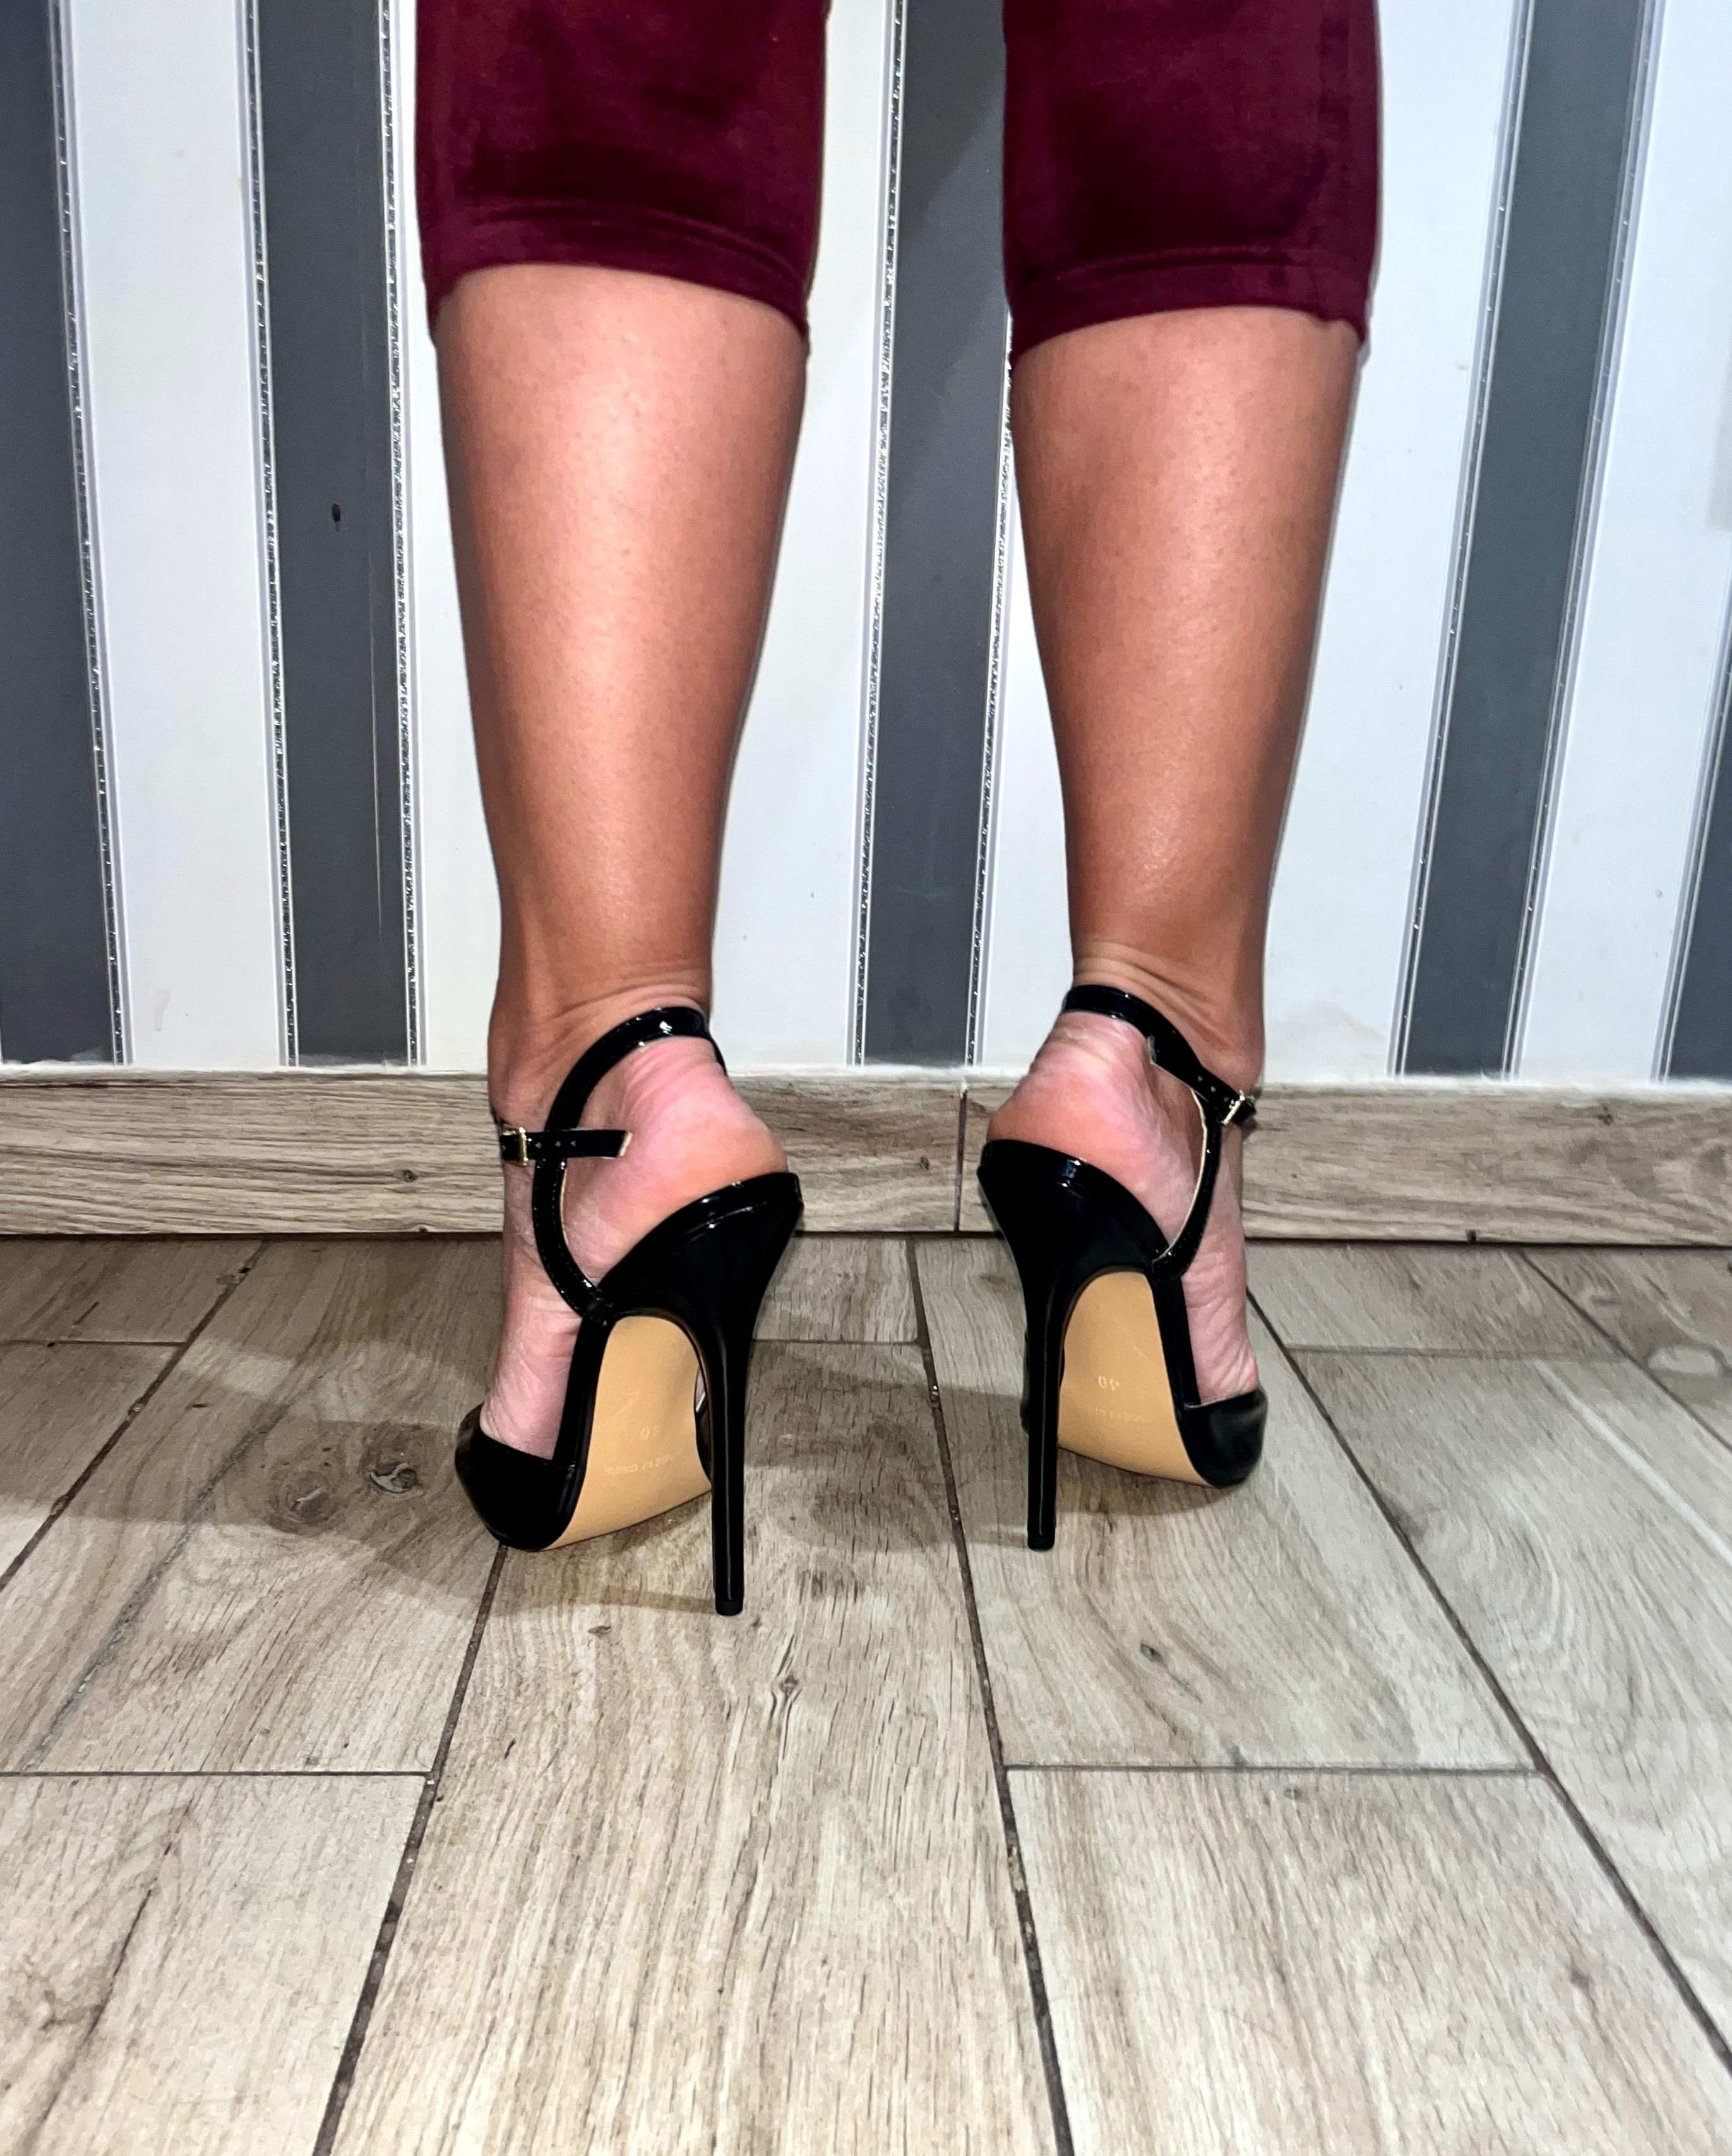 186/ ODRĘKI 44 Piękne szpilki high heels Trans Crossdress czarne 36-46